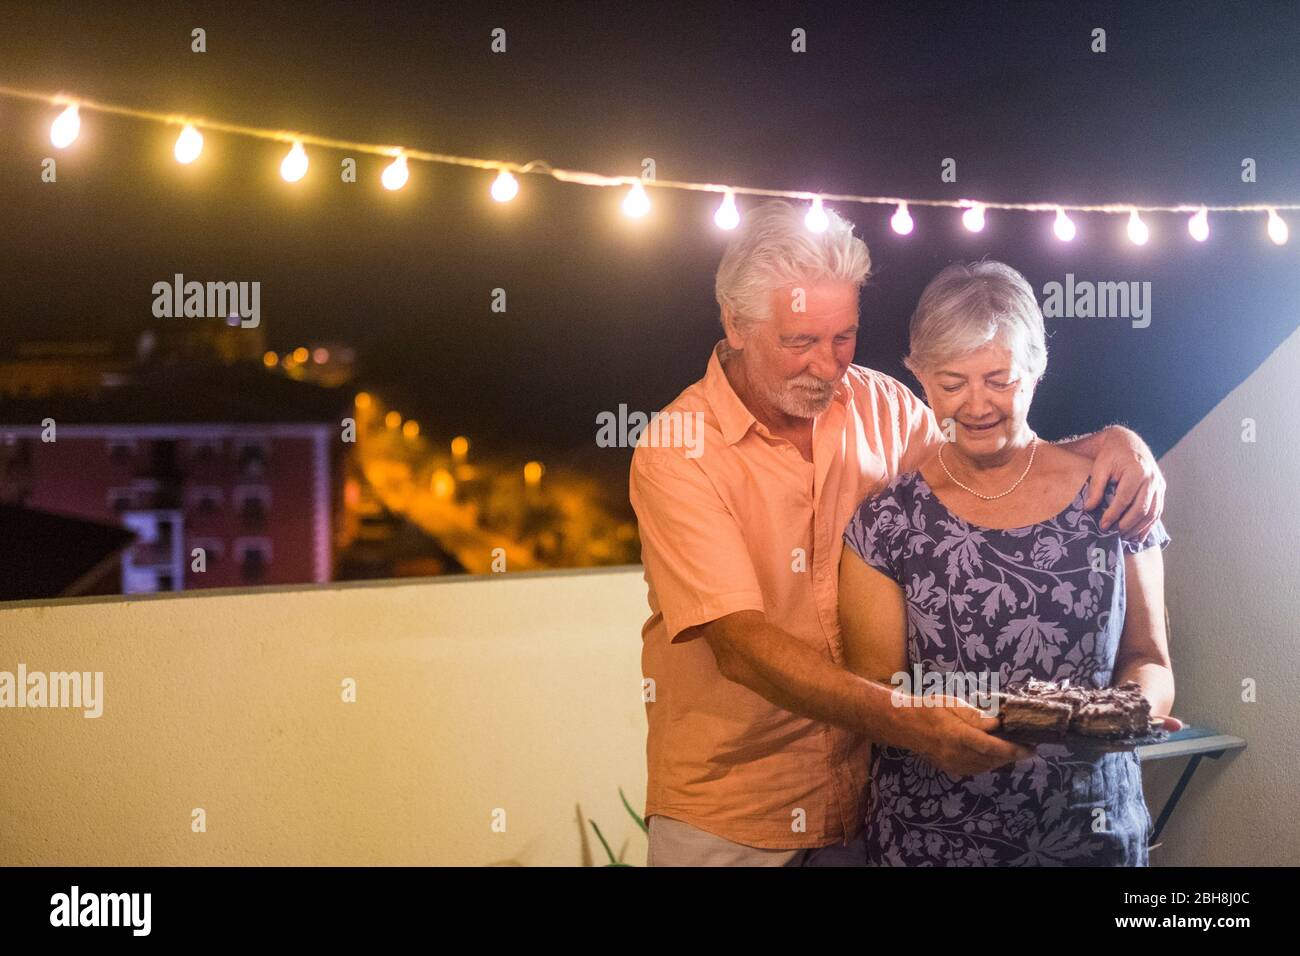 Happy Senior Erwachsene Paar mit einem Schokoladenkuchen nach dem Abendessen zu Hause im Freien auf der Terrasse mit Party Glühbirne Licht - Geburtstagskonzept oder Neujahr Feier für Erwachsene Menschen - Stockfoto